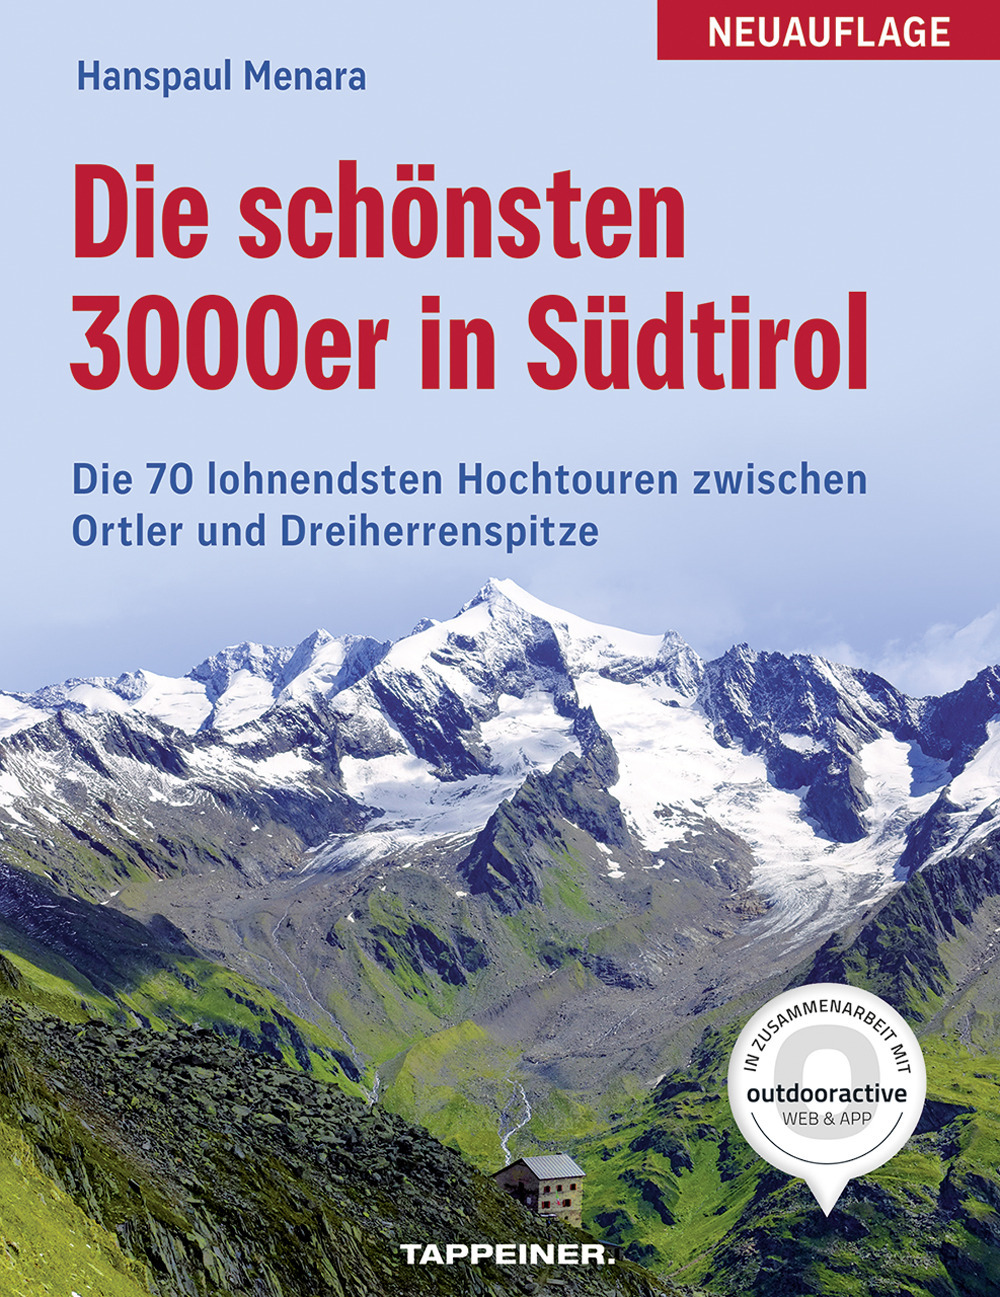 Die schönsten 3000er in Südtirol: 70 lohnende Hochtouren